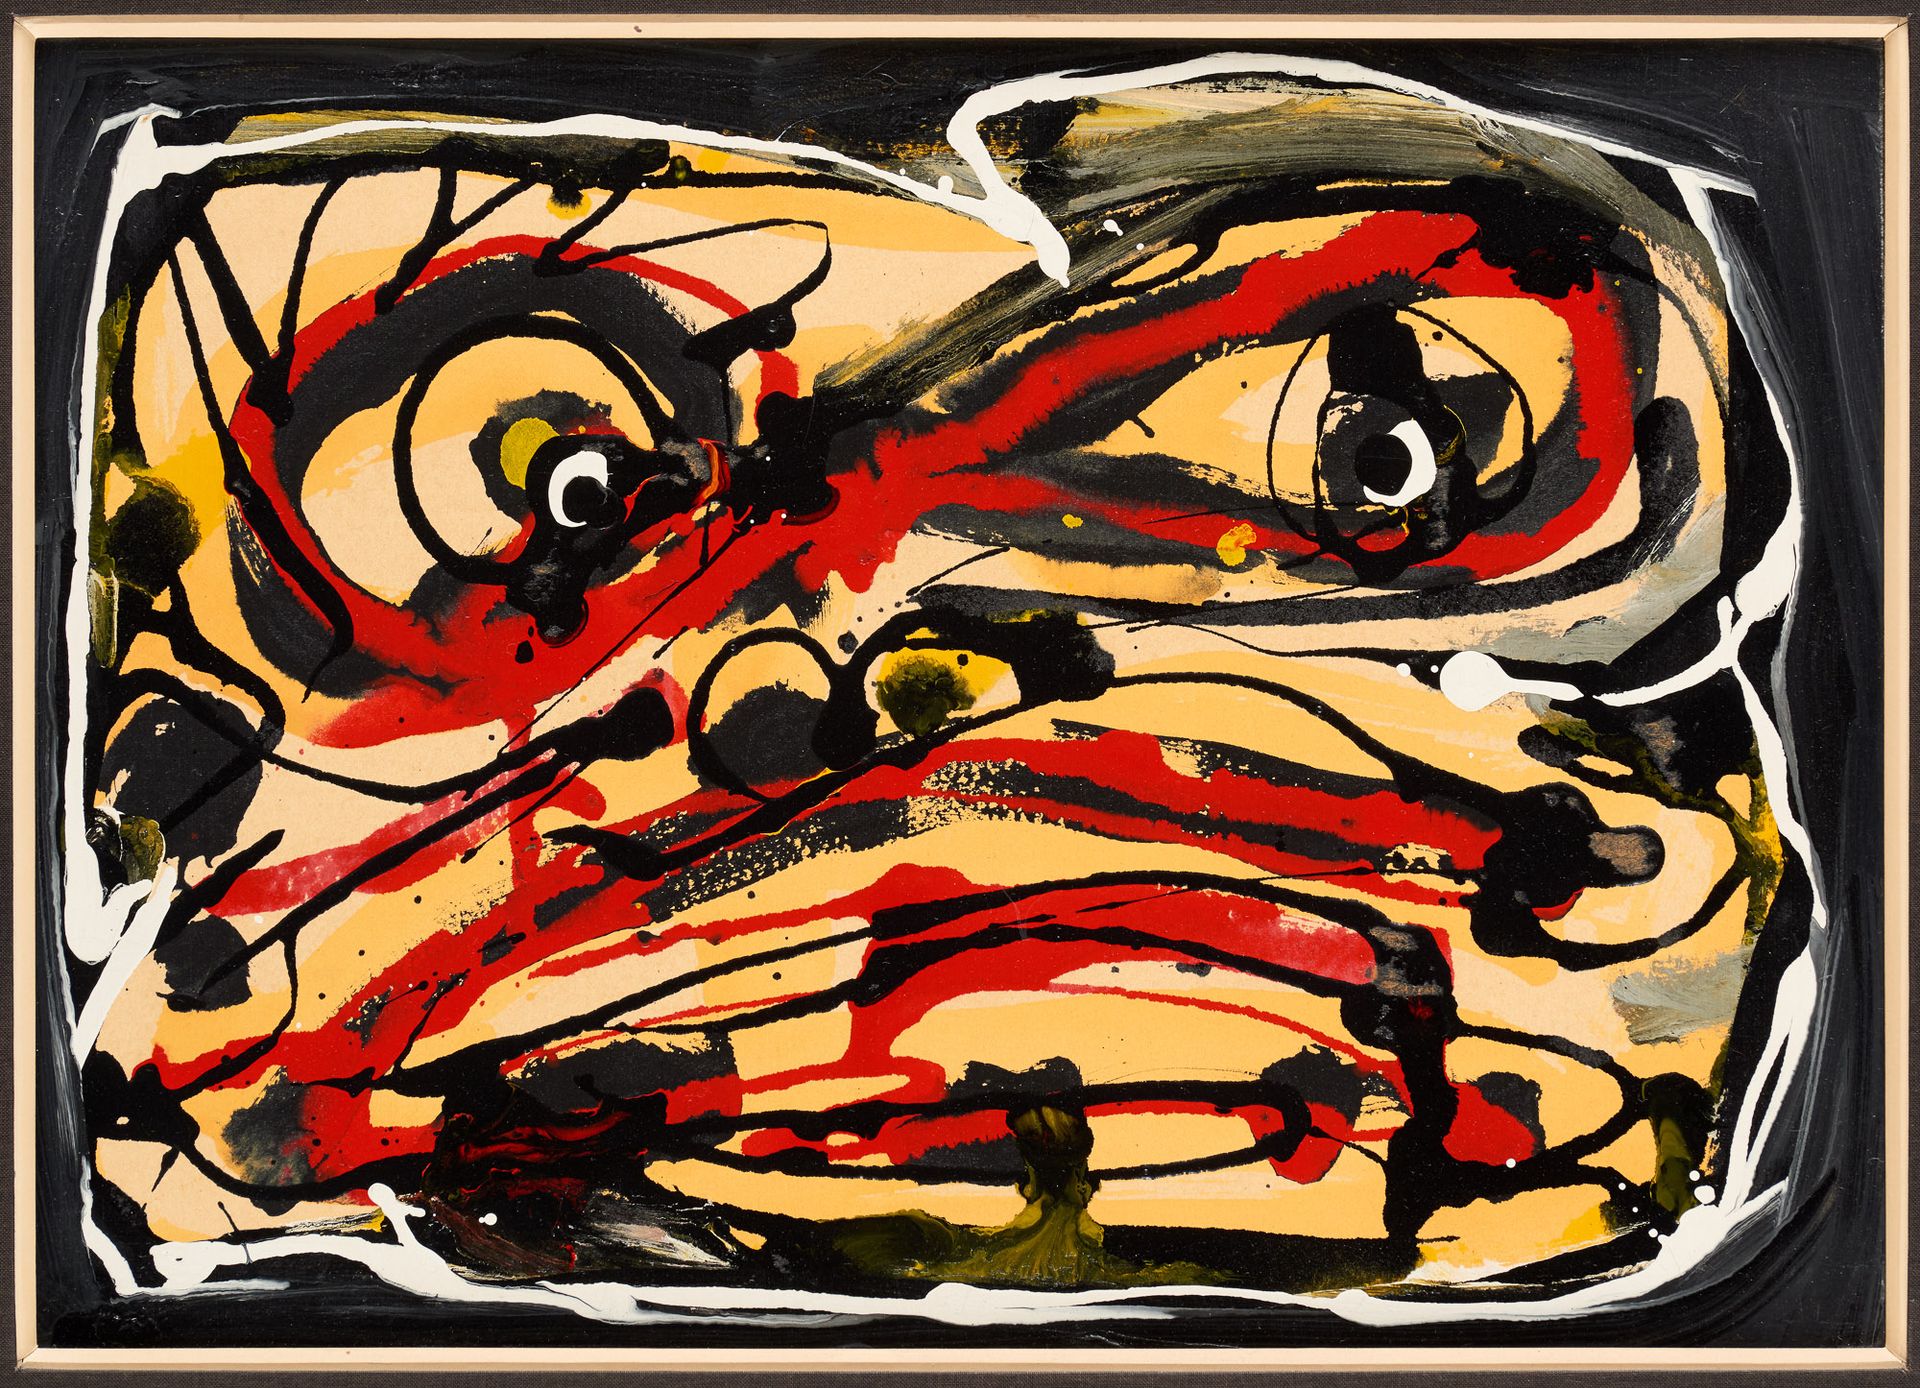 Antonio SAURA École espagnole (1930-1998) Acryl auf Leinwand: Gesicht.

Von Anto&hellip;